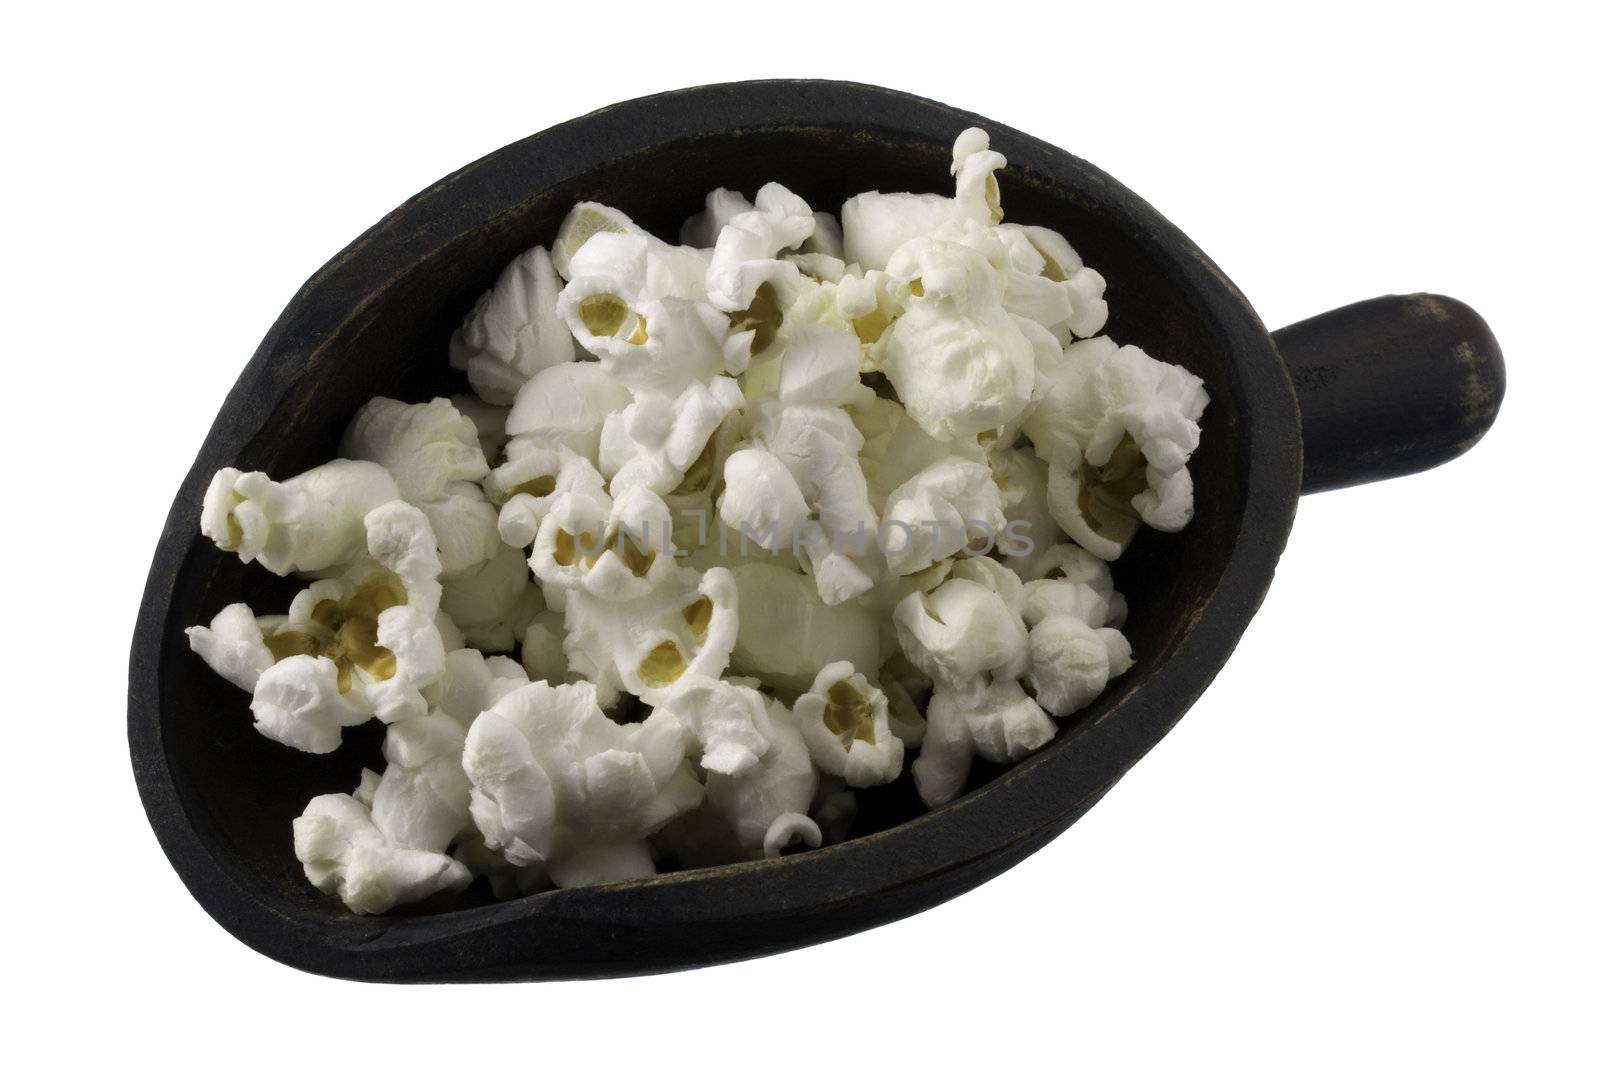 scoop of popcorn by PixelsAway